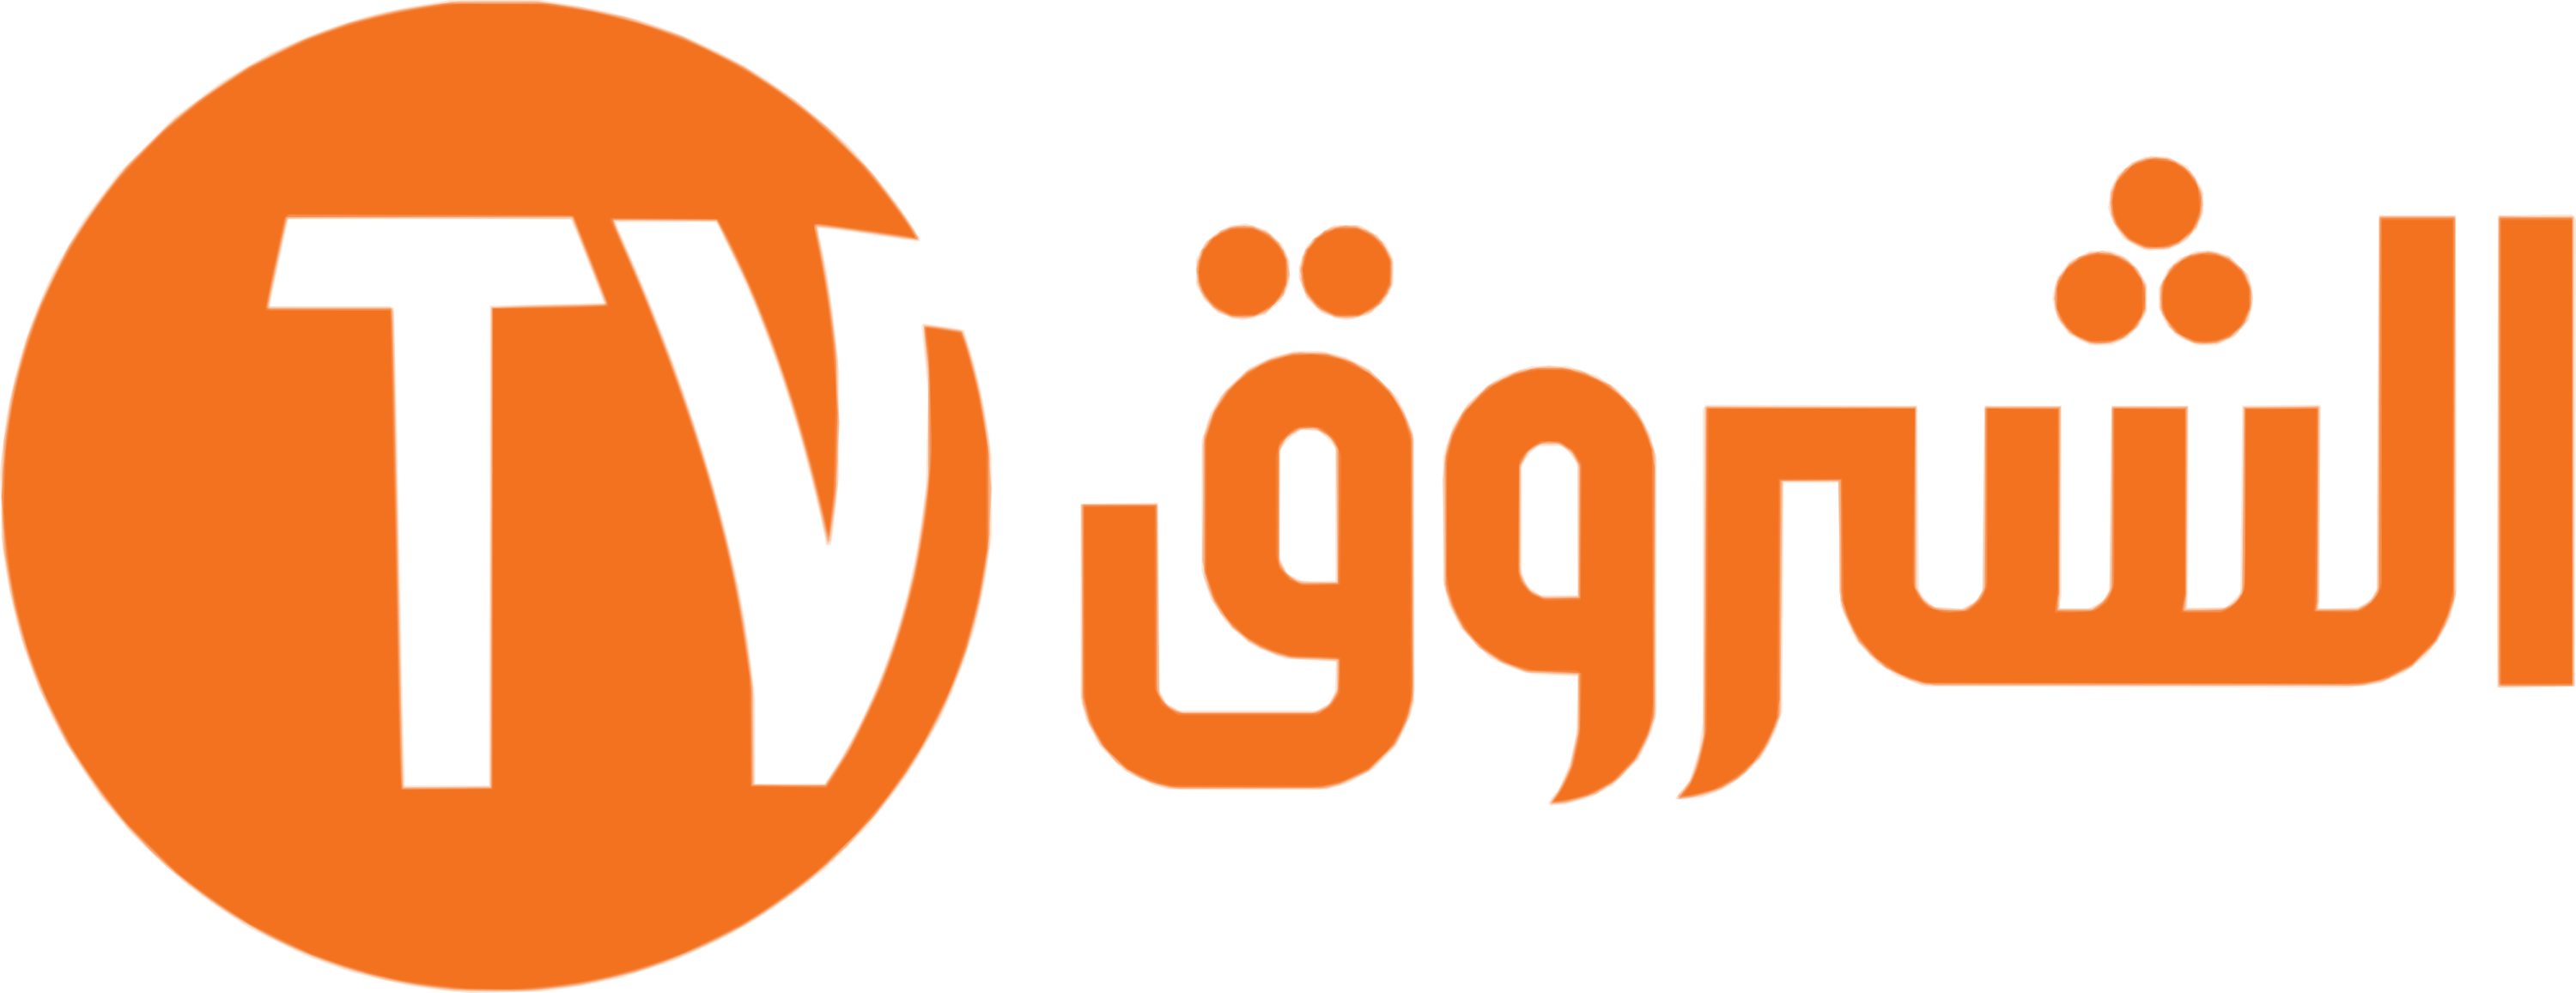 Echourouk TV Logo